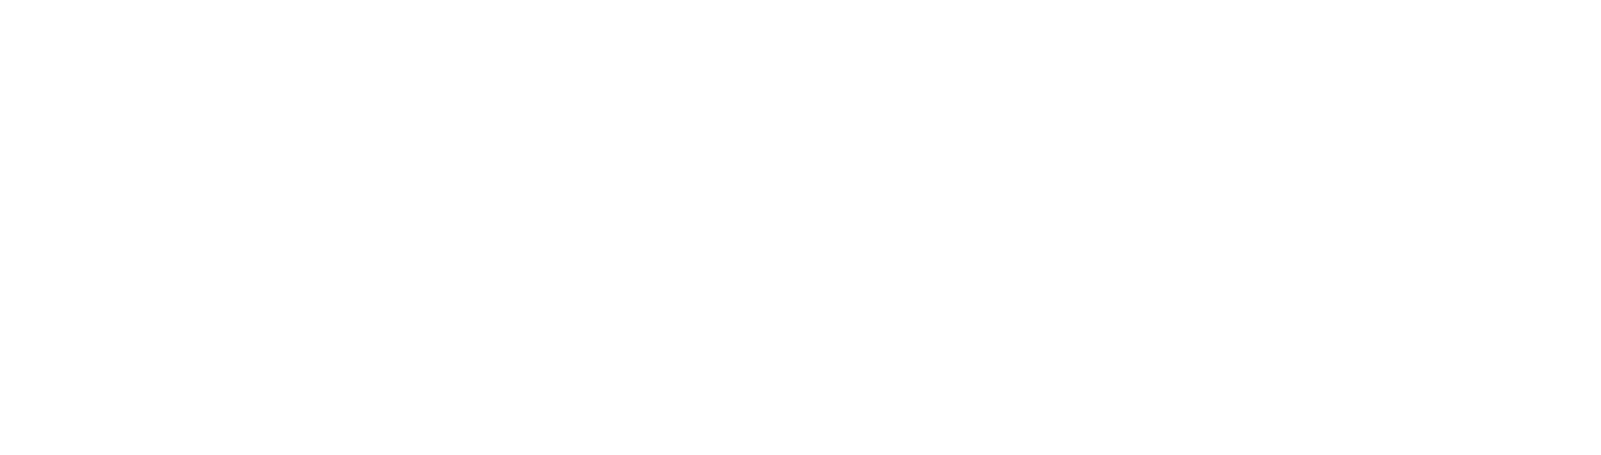 Tredegar logo large for dark backgrounds (transparent PNG)